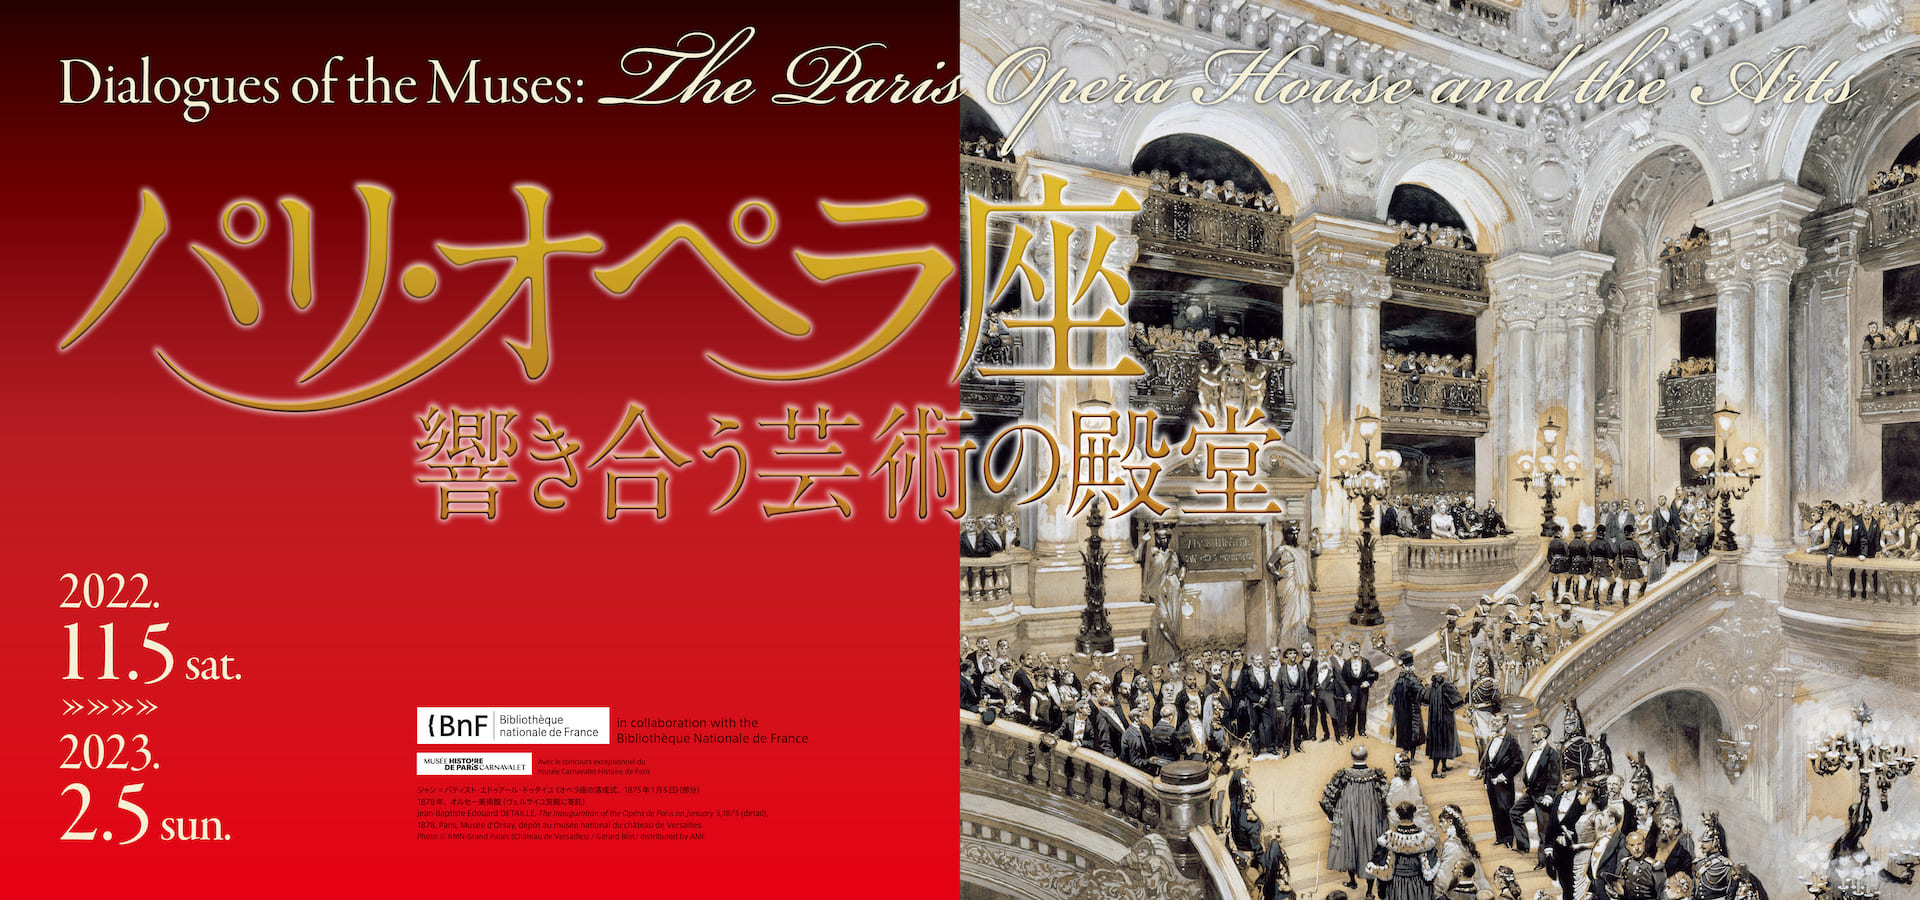 パリ・オペラ座−響き合う芸術の殿堂